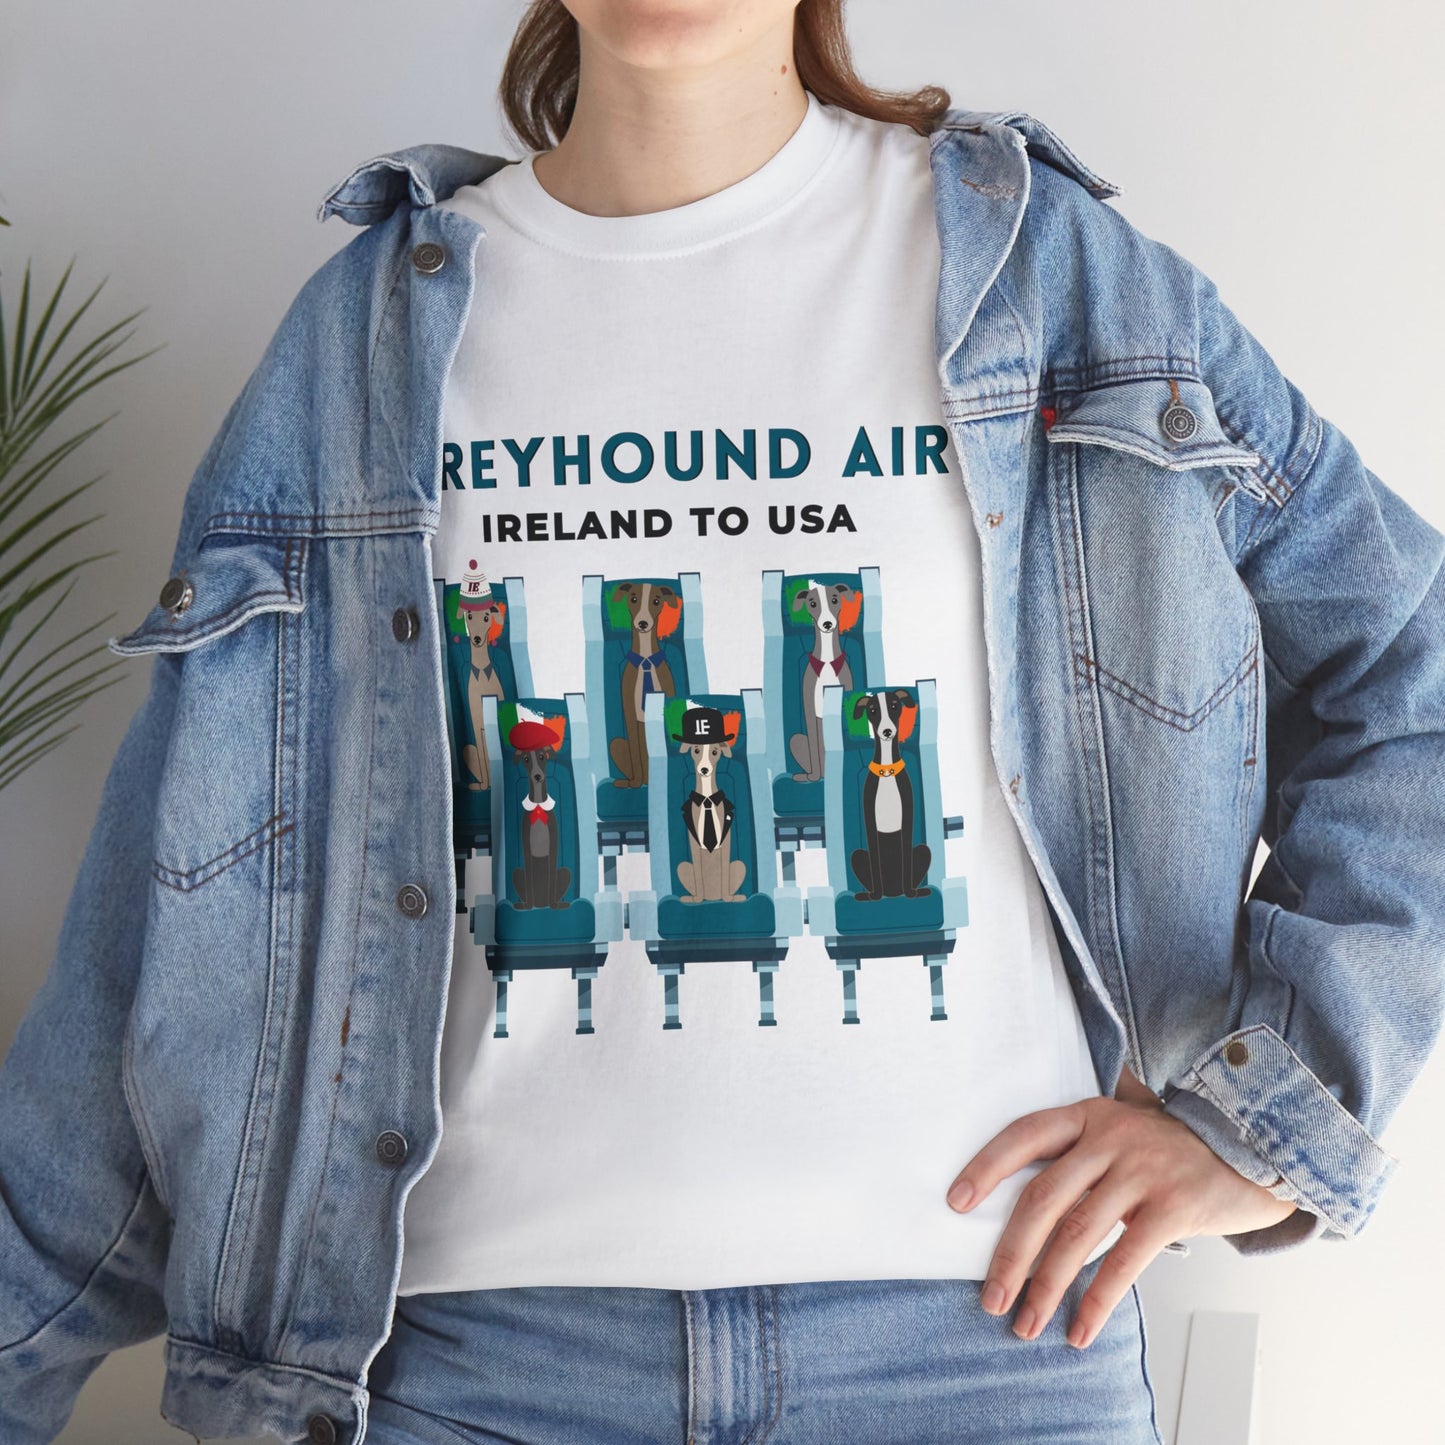 Greyhound Air Short Sleeve Shirt Ireland to USA Benefits Greyhound Rescue